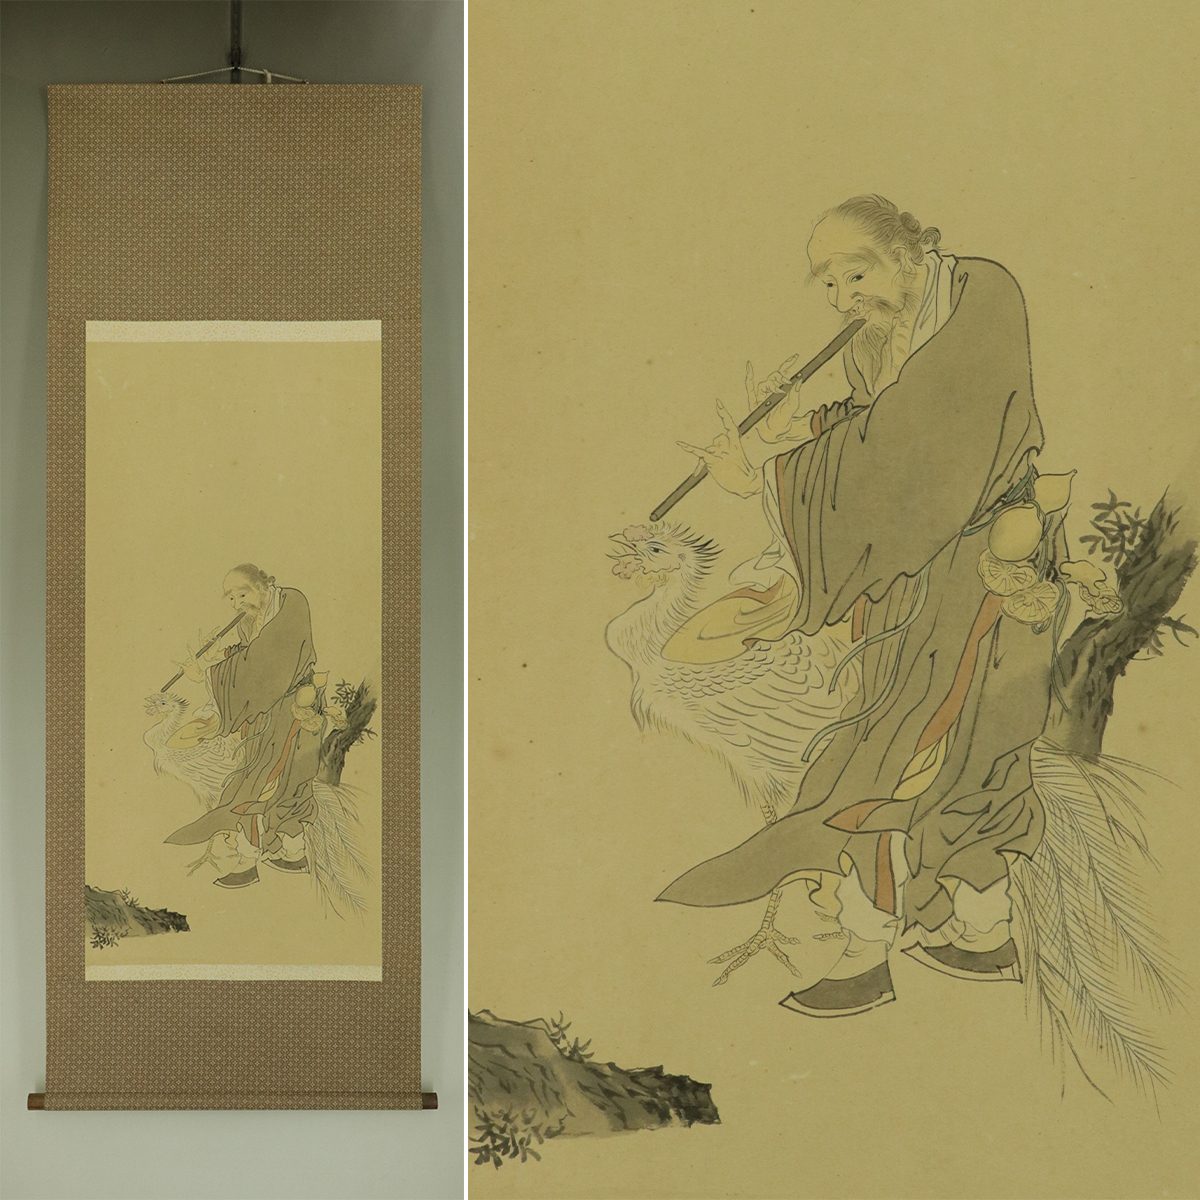 【手写】古画【孔雀隐士】◆平装本◆挂轴u12030b, 绘画, 日本画, 人, 菩萨